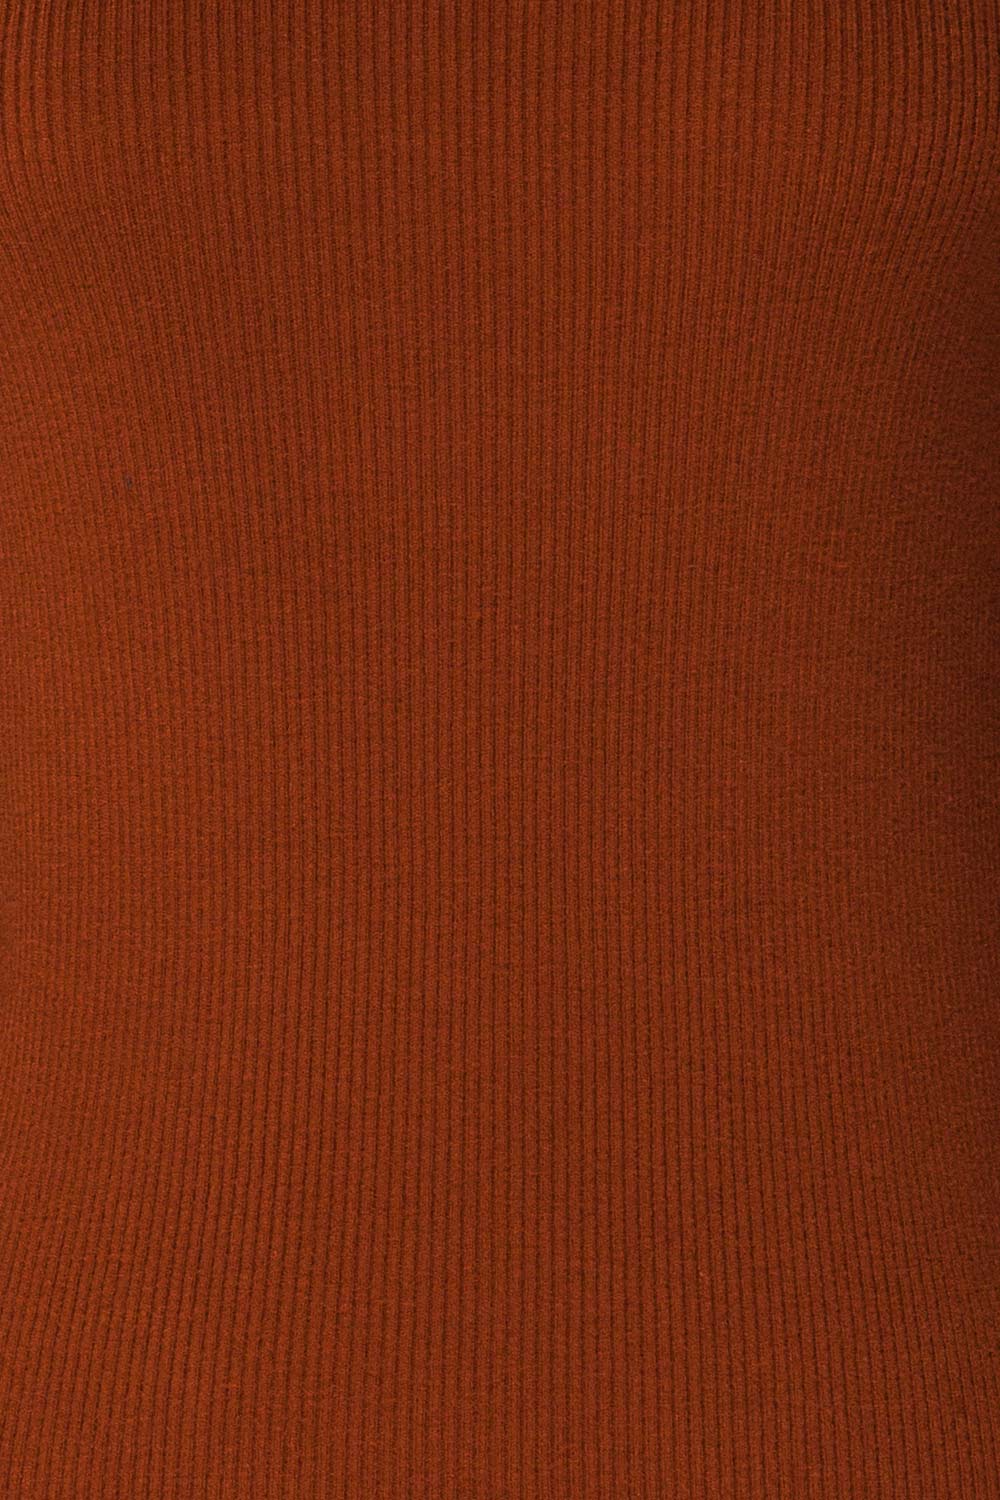 Orubica Rust Orange Ribbed Knit Sweater | La Petite Garçonne 8